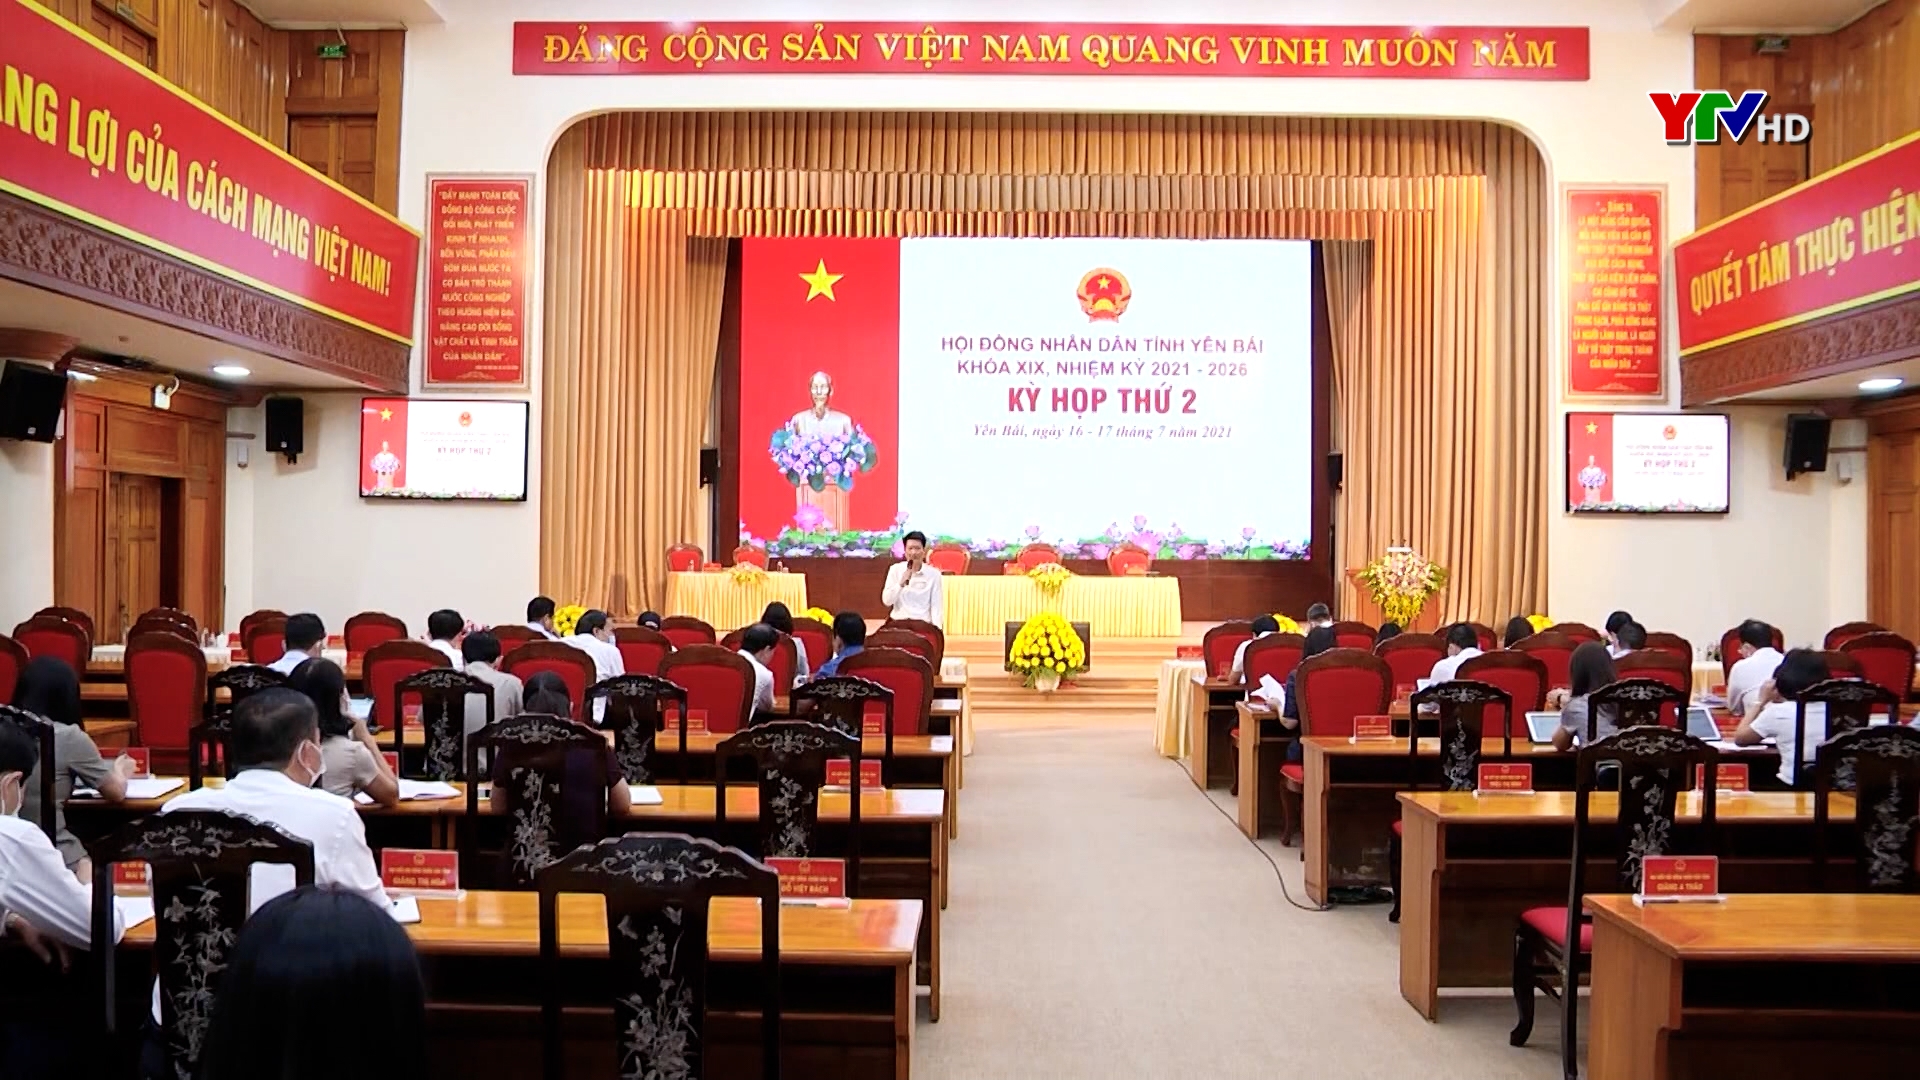 Các đại biểu dự kỳ họp thứ 2 - HĐND tỉnh Yên Bái khóa XIX thảo luận tại tổ nhiều nội dung quan trọng